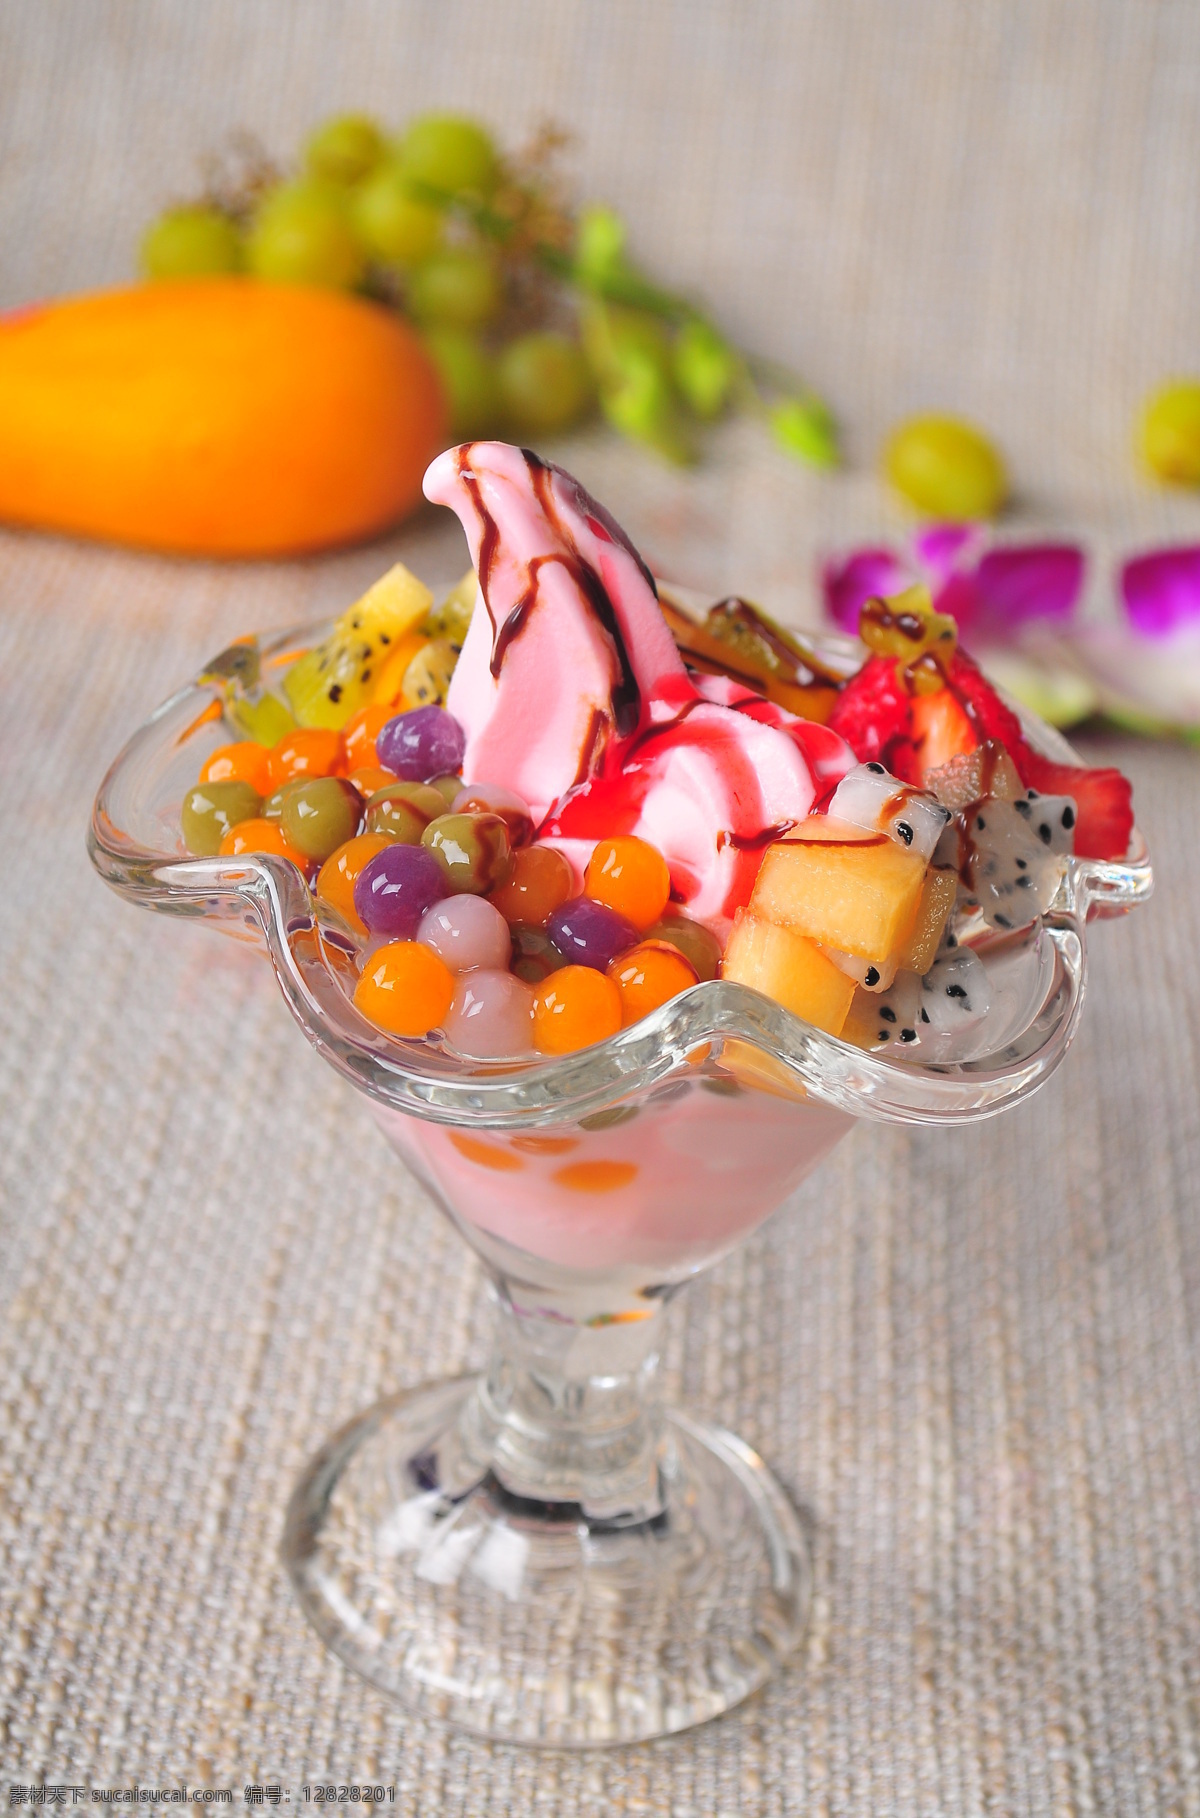 花淇淋 花式冰淇淋 冰淇淋 小吃系列 饮品系列 餐饮美食 西餐美食